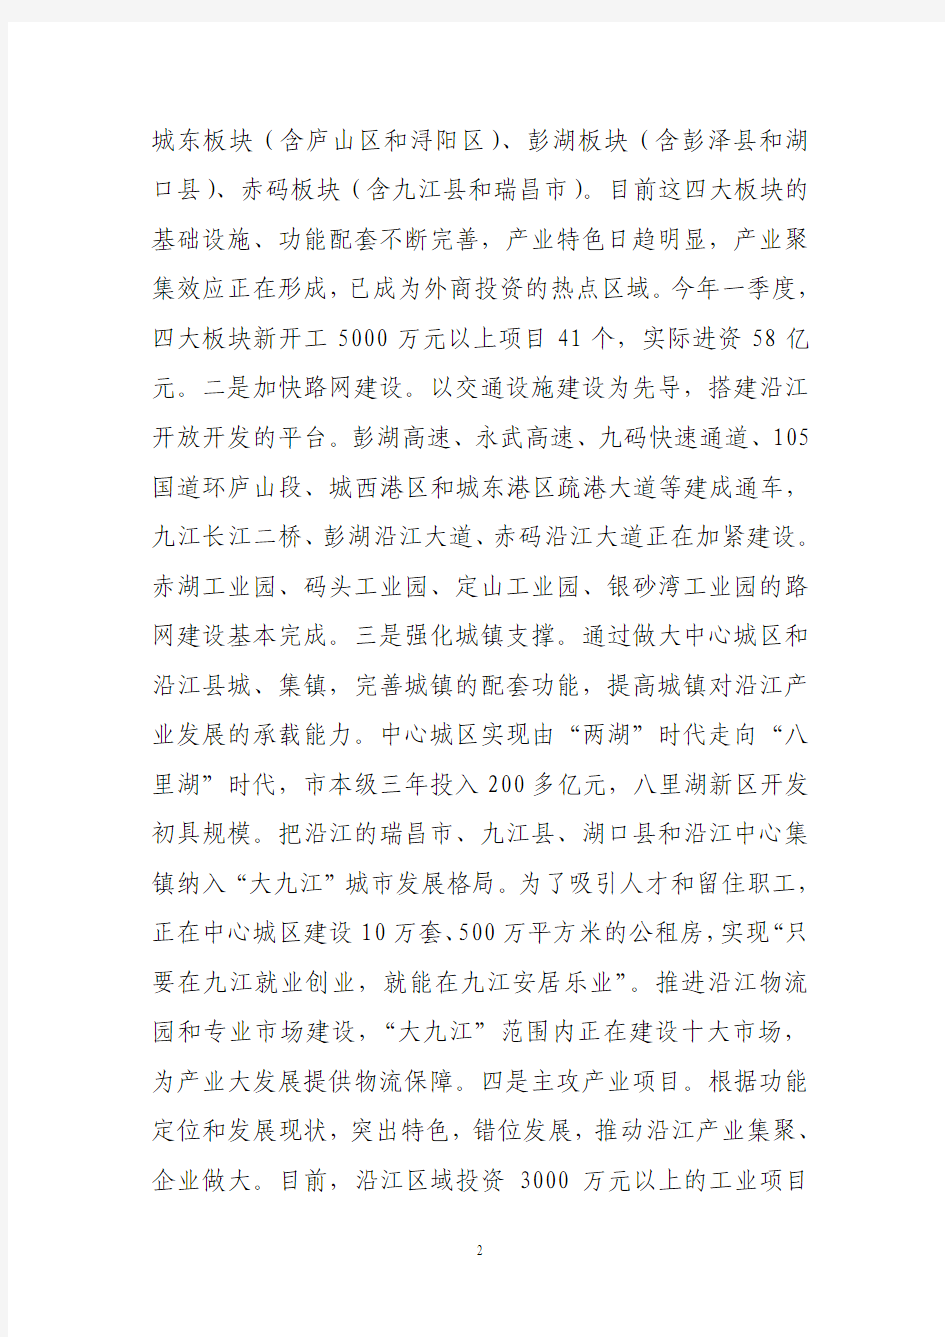 九江市委书记钟利贵在全省深入推进九江沿江开放开发工作会上的汇报